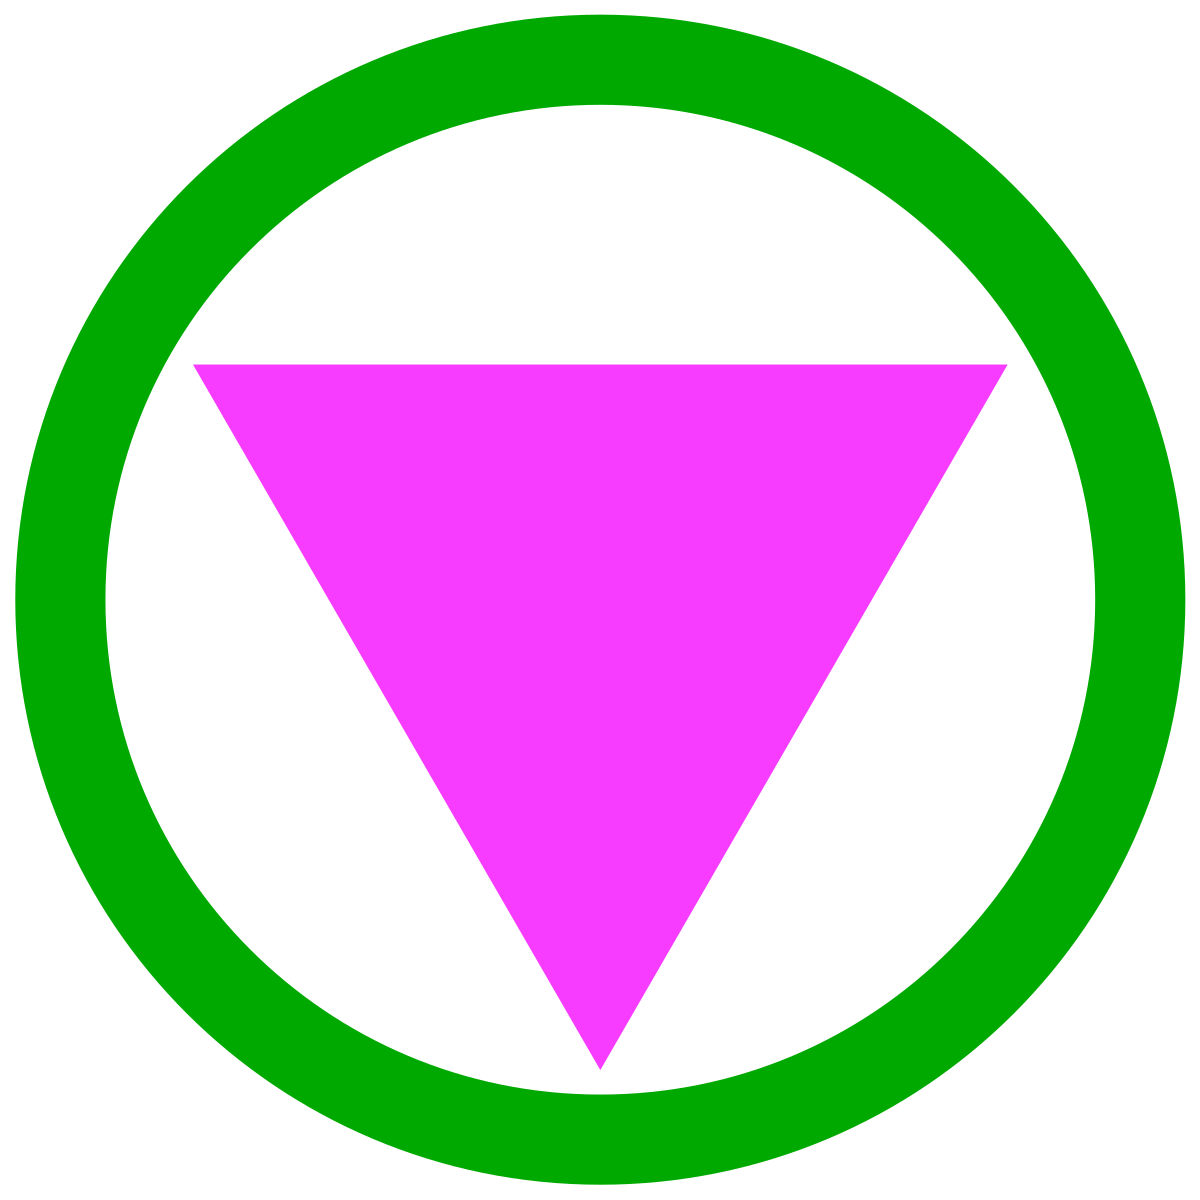 groen-roos symbool geïntroduceerd op anti-homophobia workshops tijdens de opkomst van de safe(r) spaces beweging